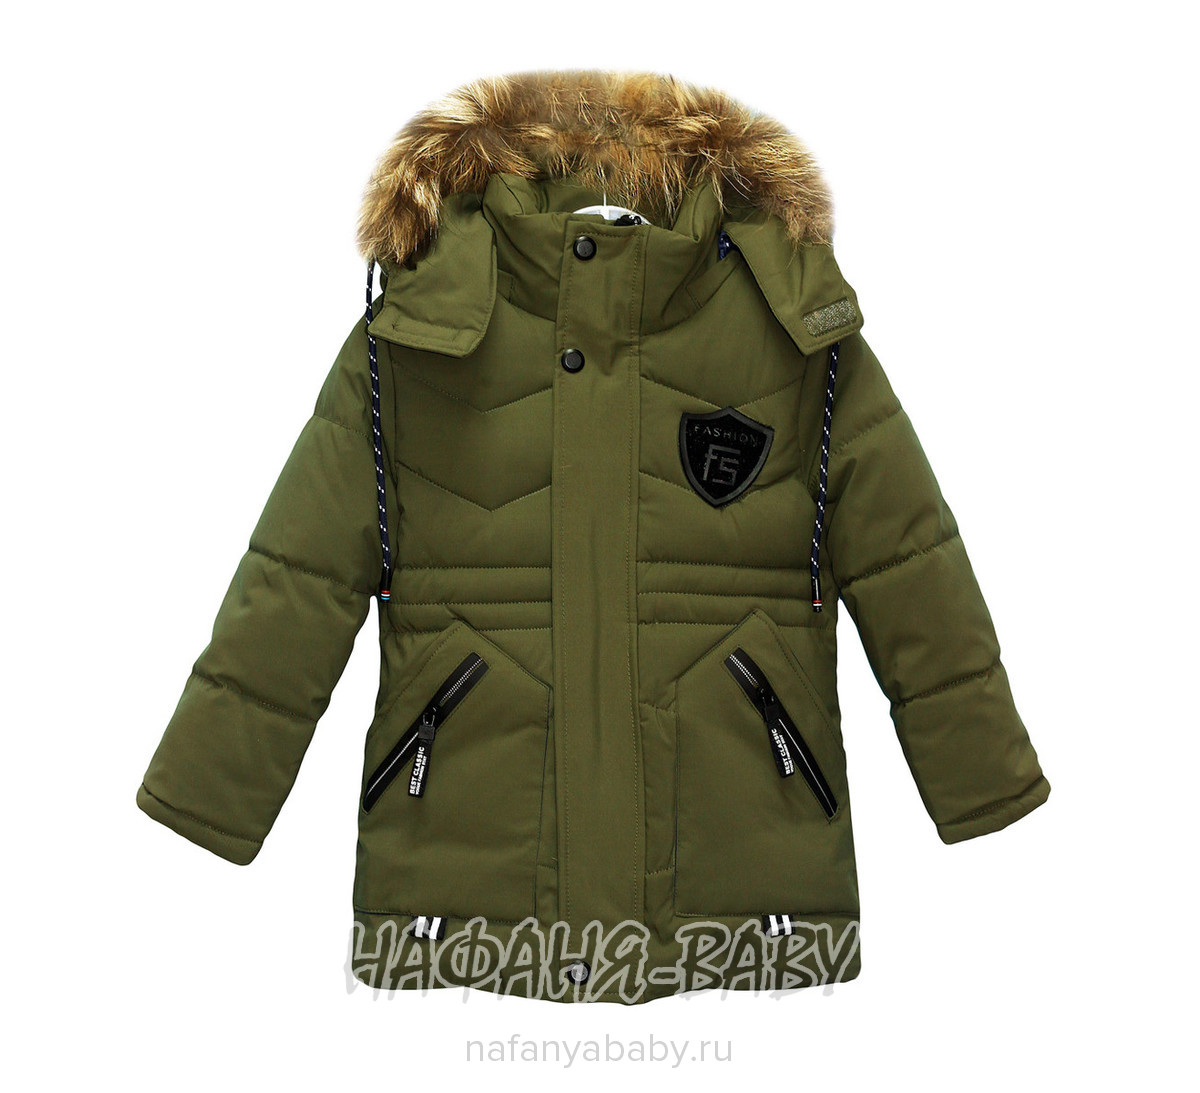 Зимняя куртка с капюшоном SHENGLIDA арт: 8804, 5-9 лет, оптом Китай (Пекин)